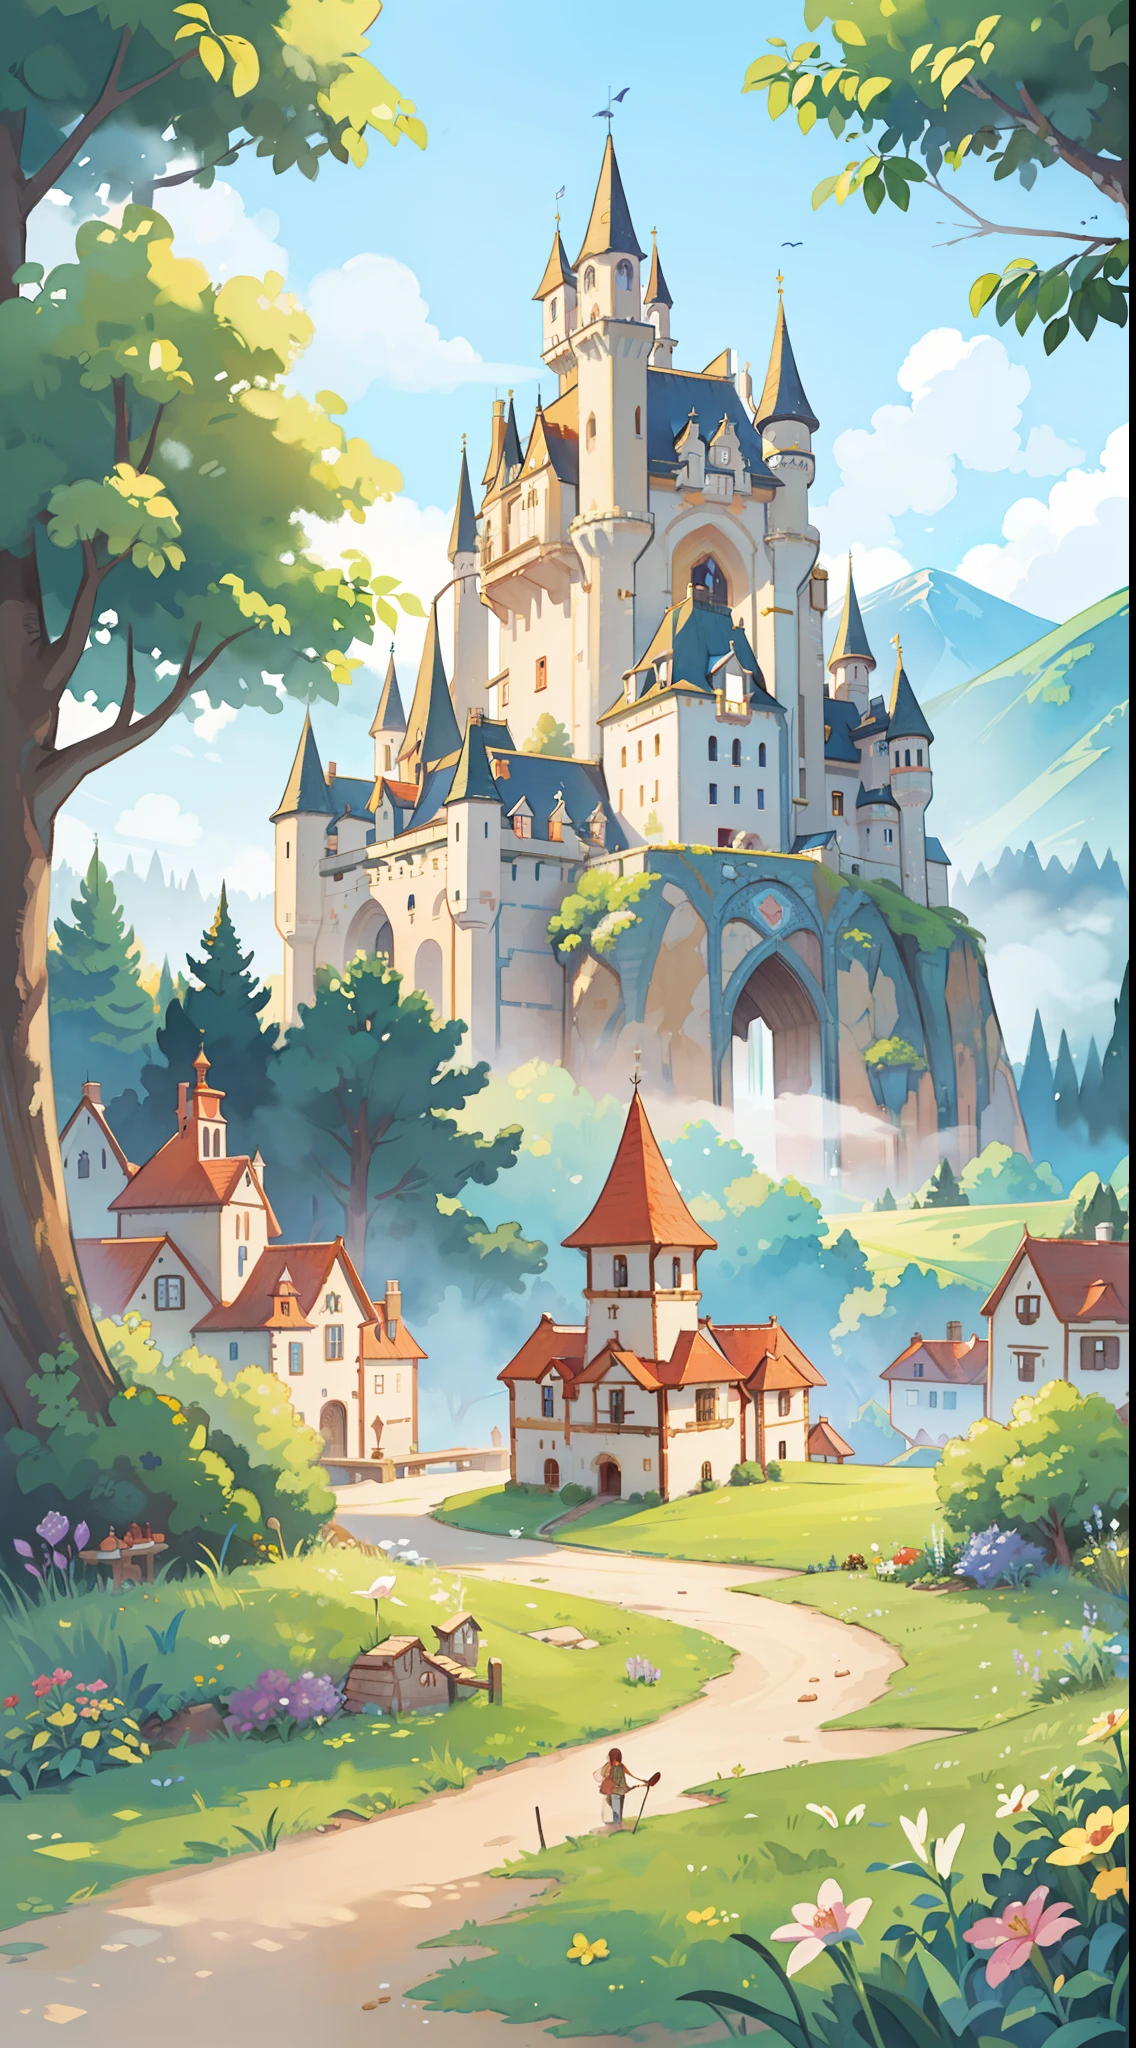 ((Bilderbuchillustration)), Fantasielandschaft, Aquarellillustration, wunderlich, warme Farben, Märchenschloss und Dorf, ((Prinzessinnenschloss)), Märchenhafte Häuser im mittelalterlichen Stil, ((Meisterwerk)), sehr detaillierte Umgebung